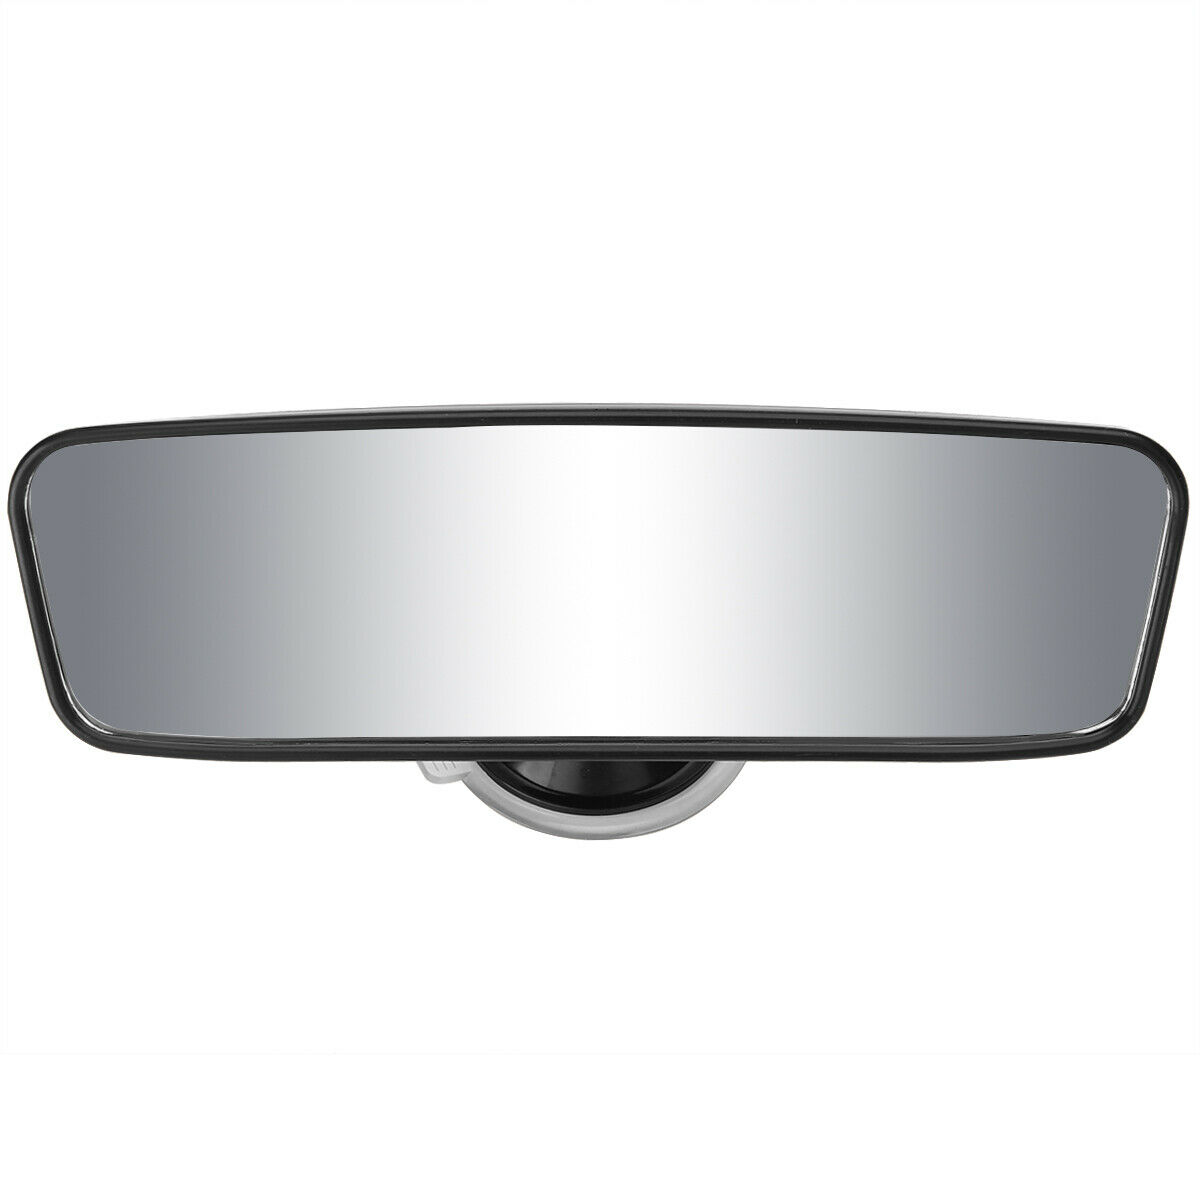 H+H Spiegel BS 863 Auto-Rückspiegel, mit Saugnapf und Klammer,  Zusatzspiegel, für Auto